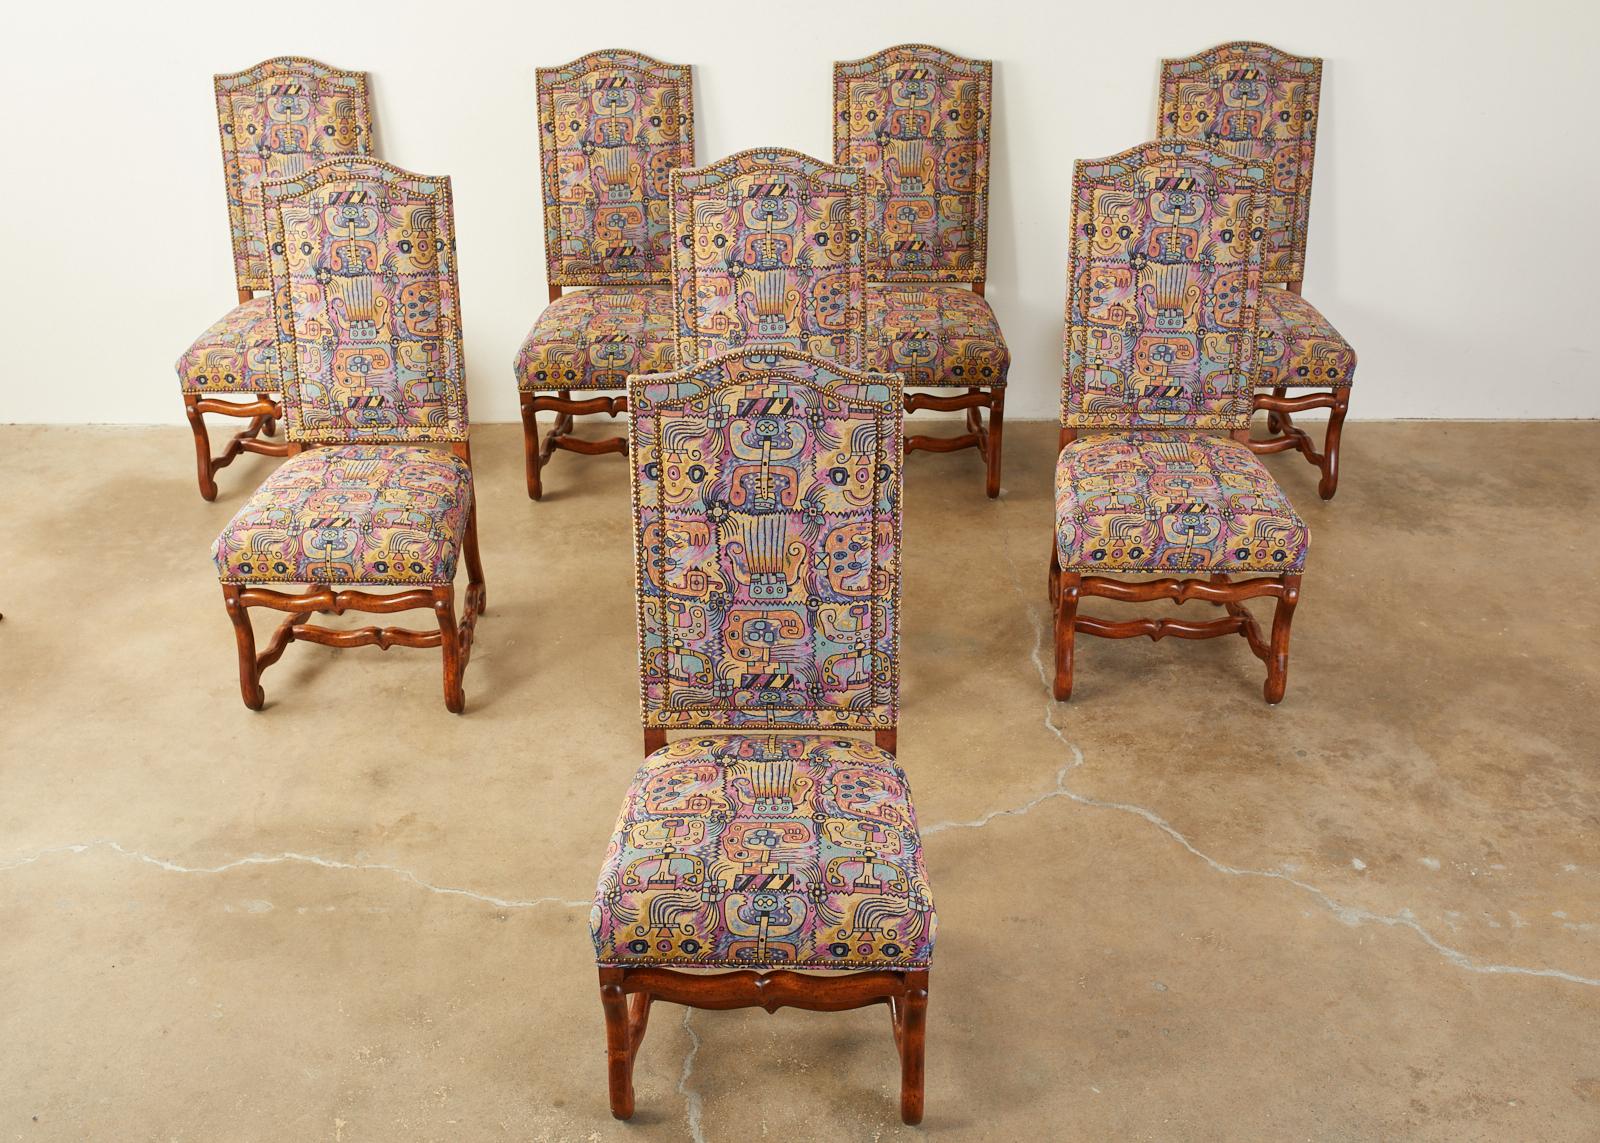 Atemberaubendes Set aus acht französischen Esszimmerstühlen mit einer modernen Redux-Polsterung und einem skurrilen, abstrakt-expressionistischen, figuralen Kunstwerk. Die Stühle sind im Stil von Louis XIV Os de Mouton aus reichem Nussbaumholz